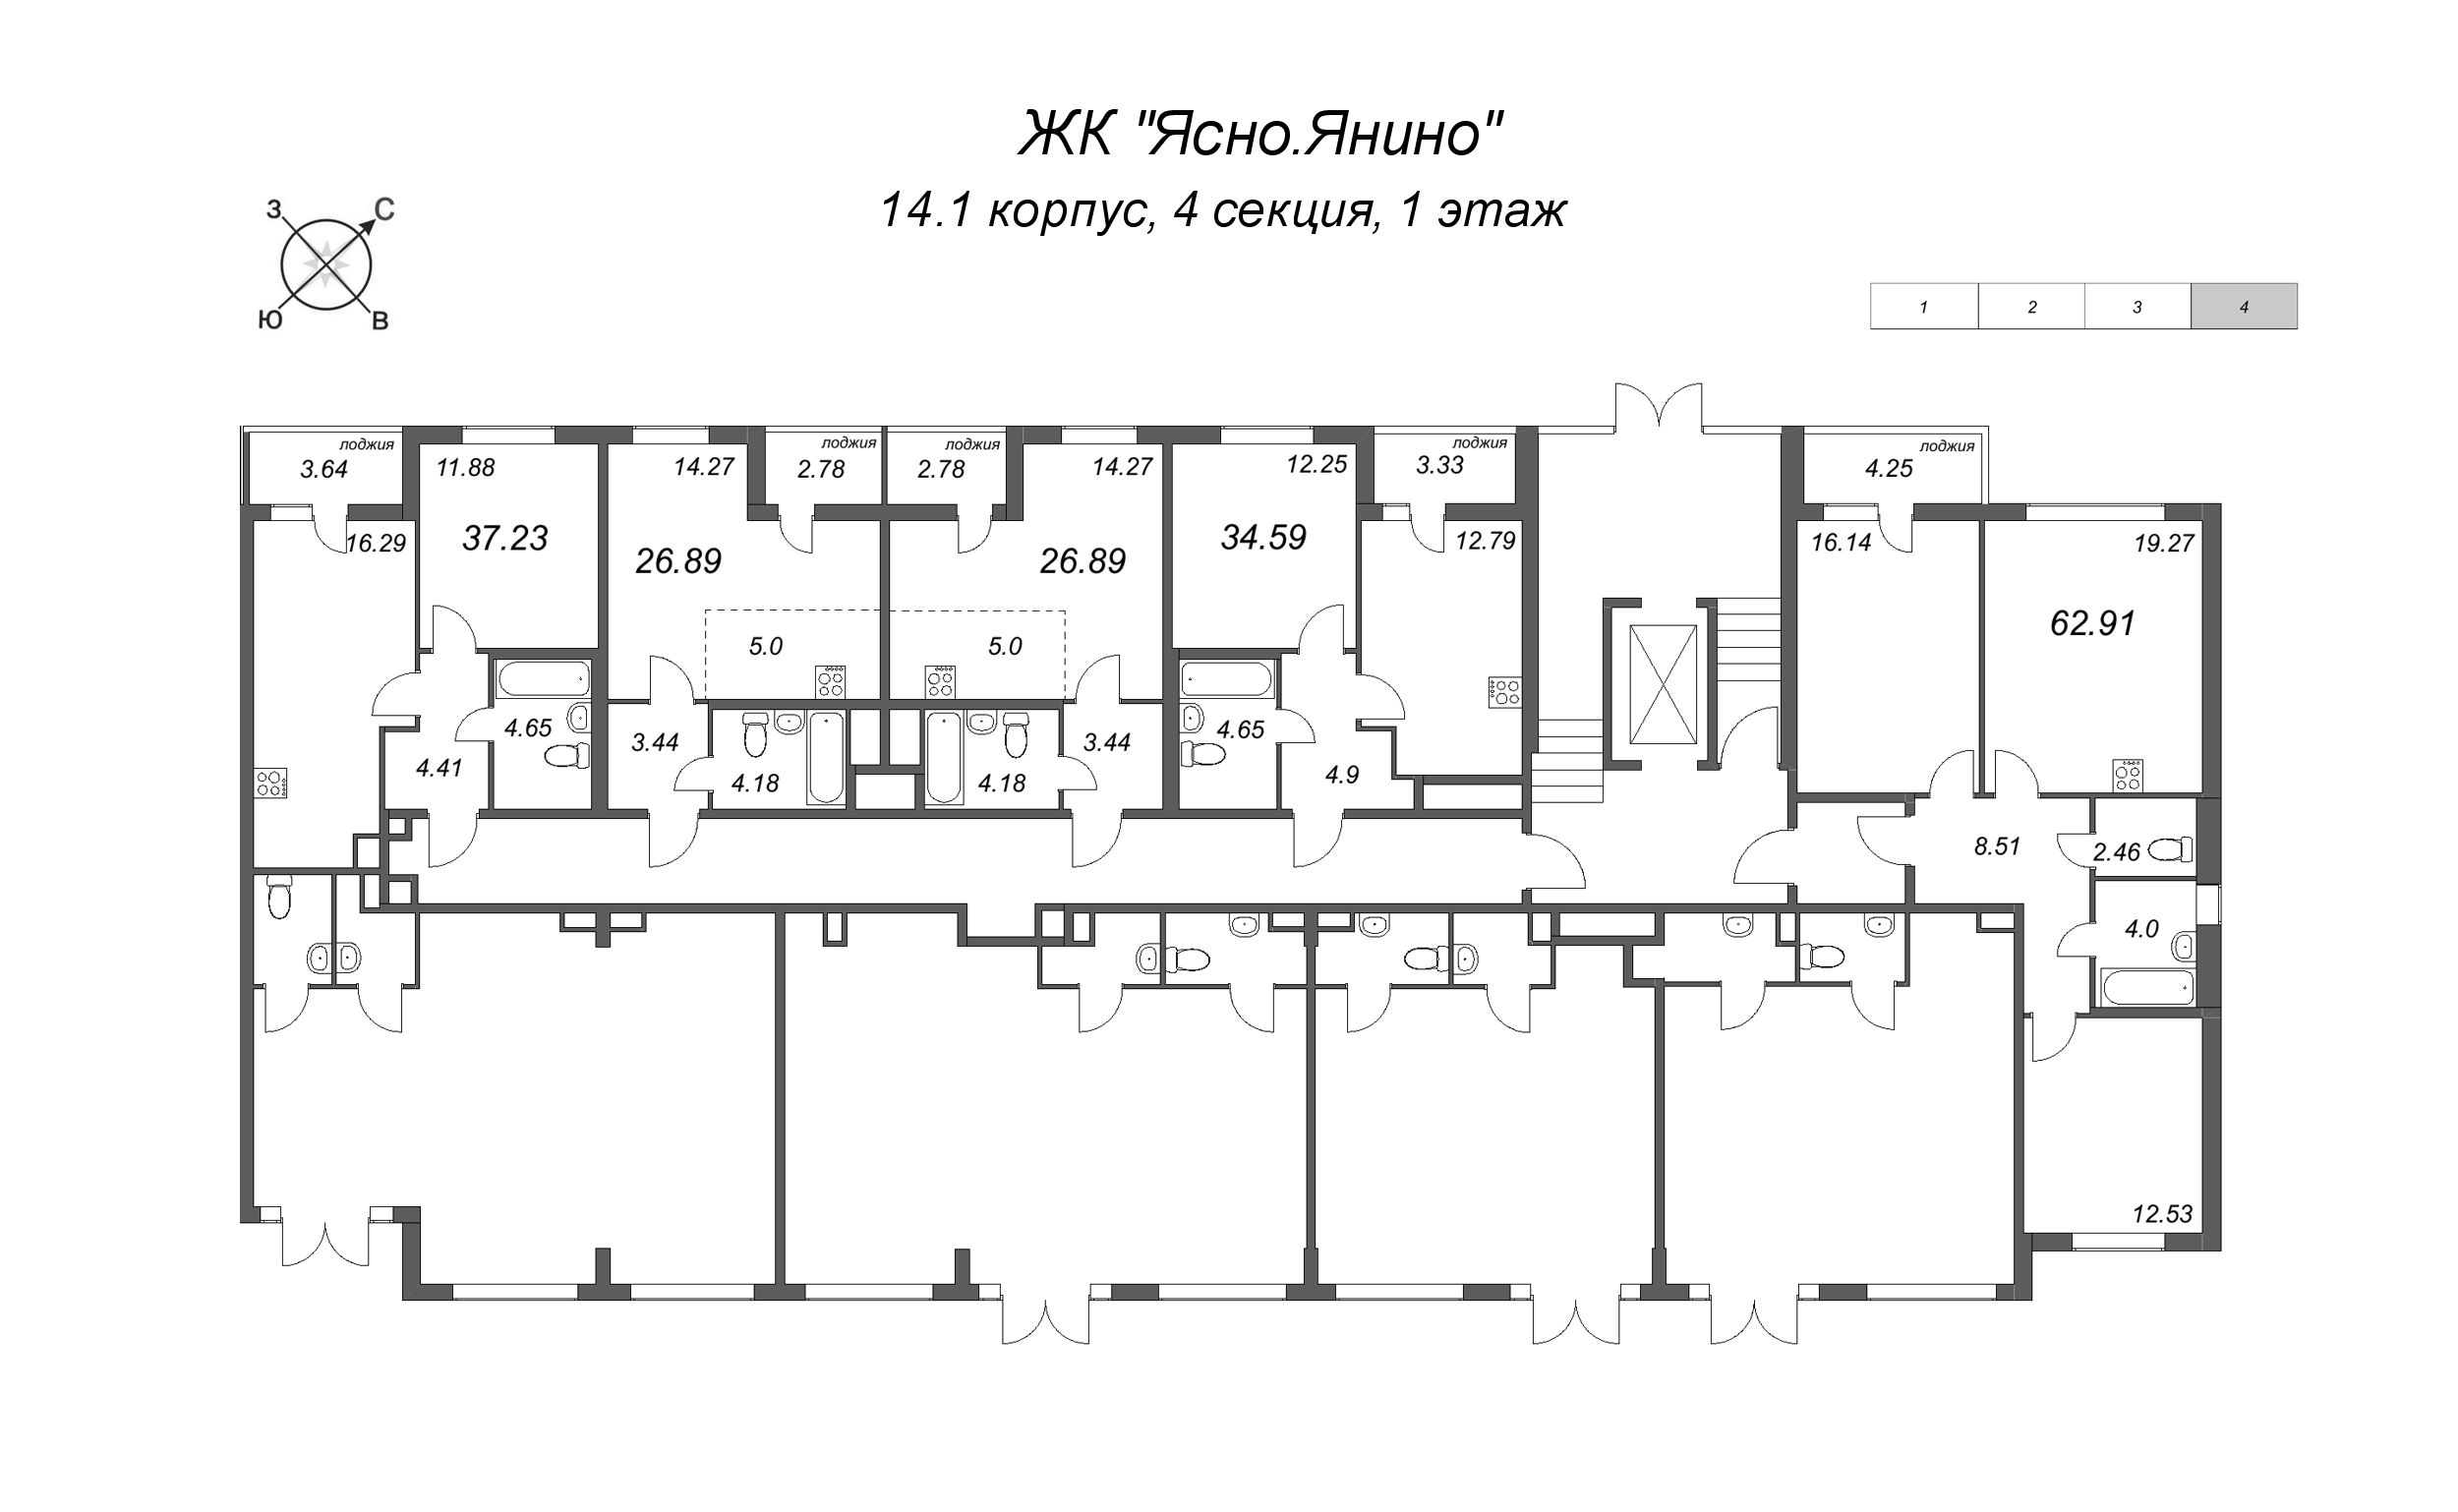 Квартира-студия, 26.89 м² в ЖК "Ясно.Янино" - планировка этажа